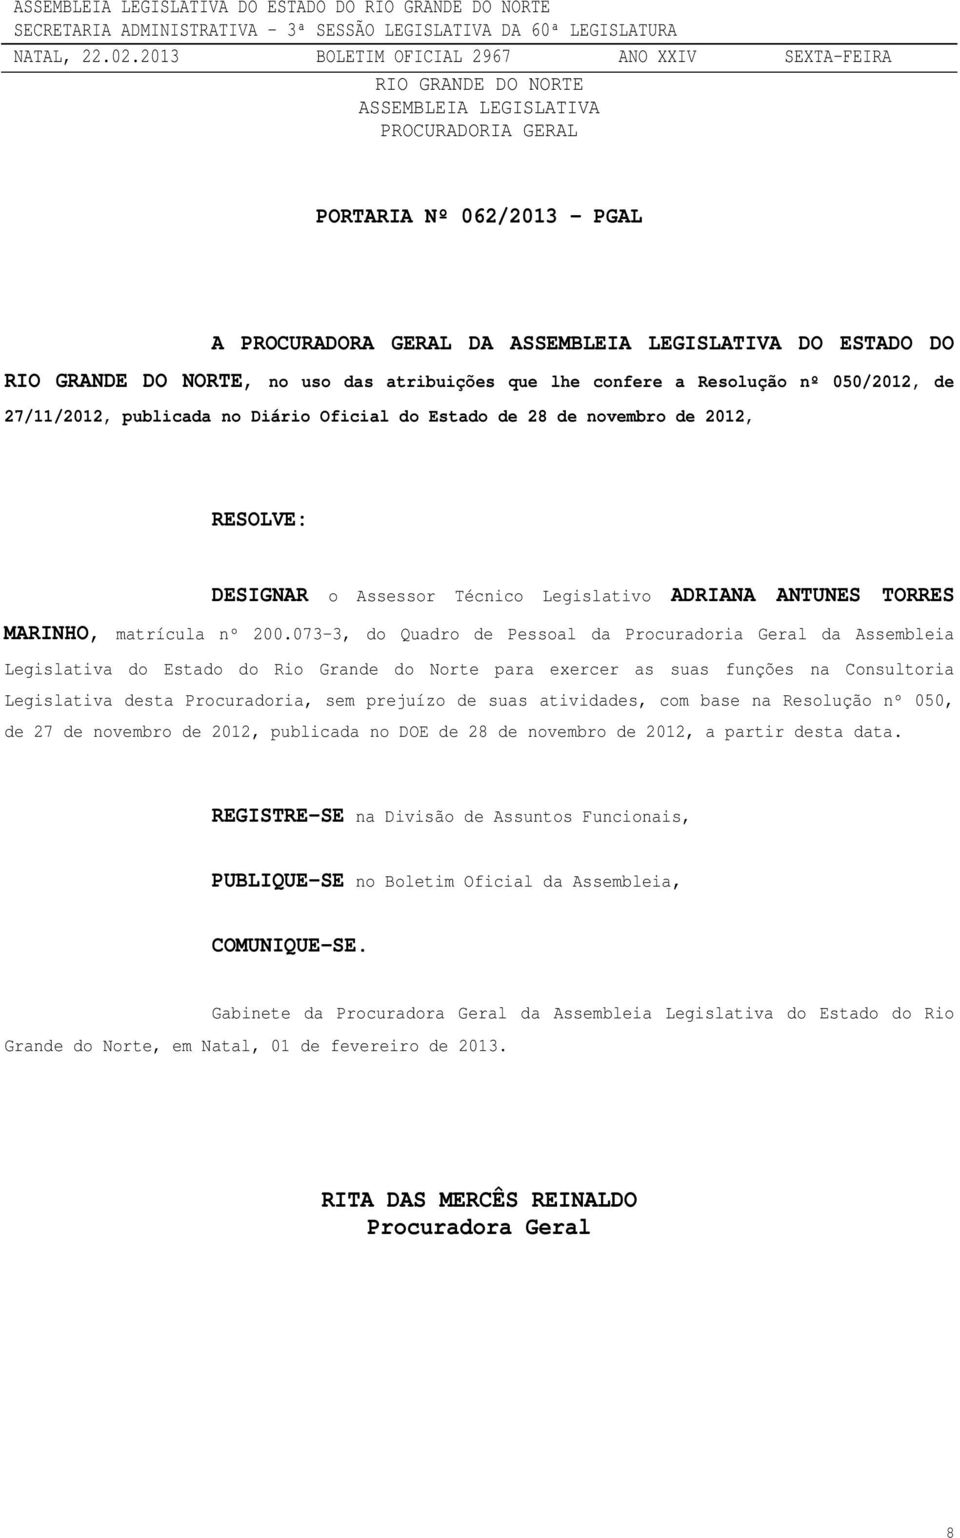 073-3, do Quadro de Pessoal da Procuradoria Geral da Assembleia Legislativa do Estado do Rio Grande do Norte para exercer as suas funções